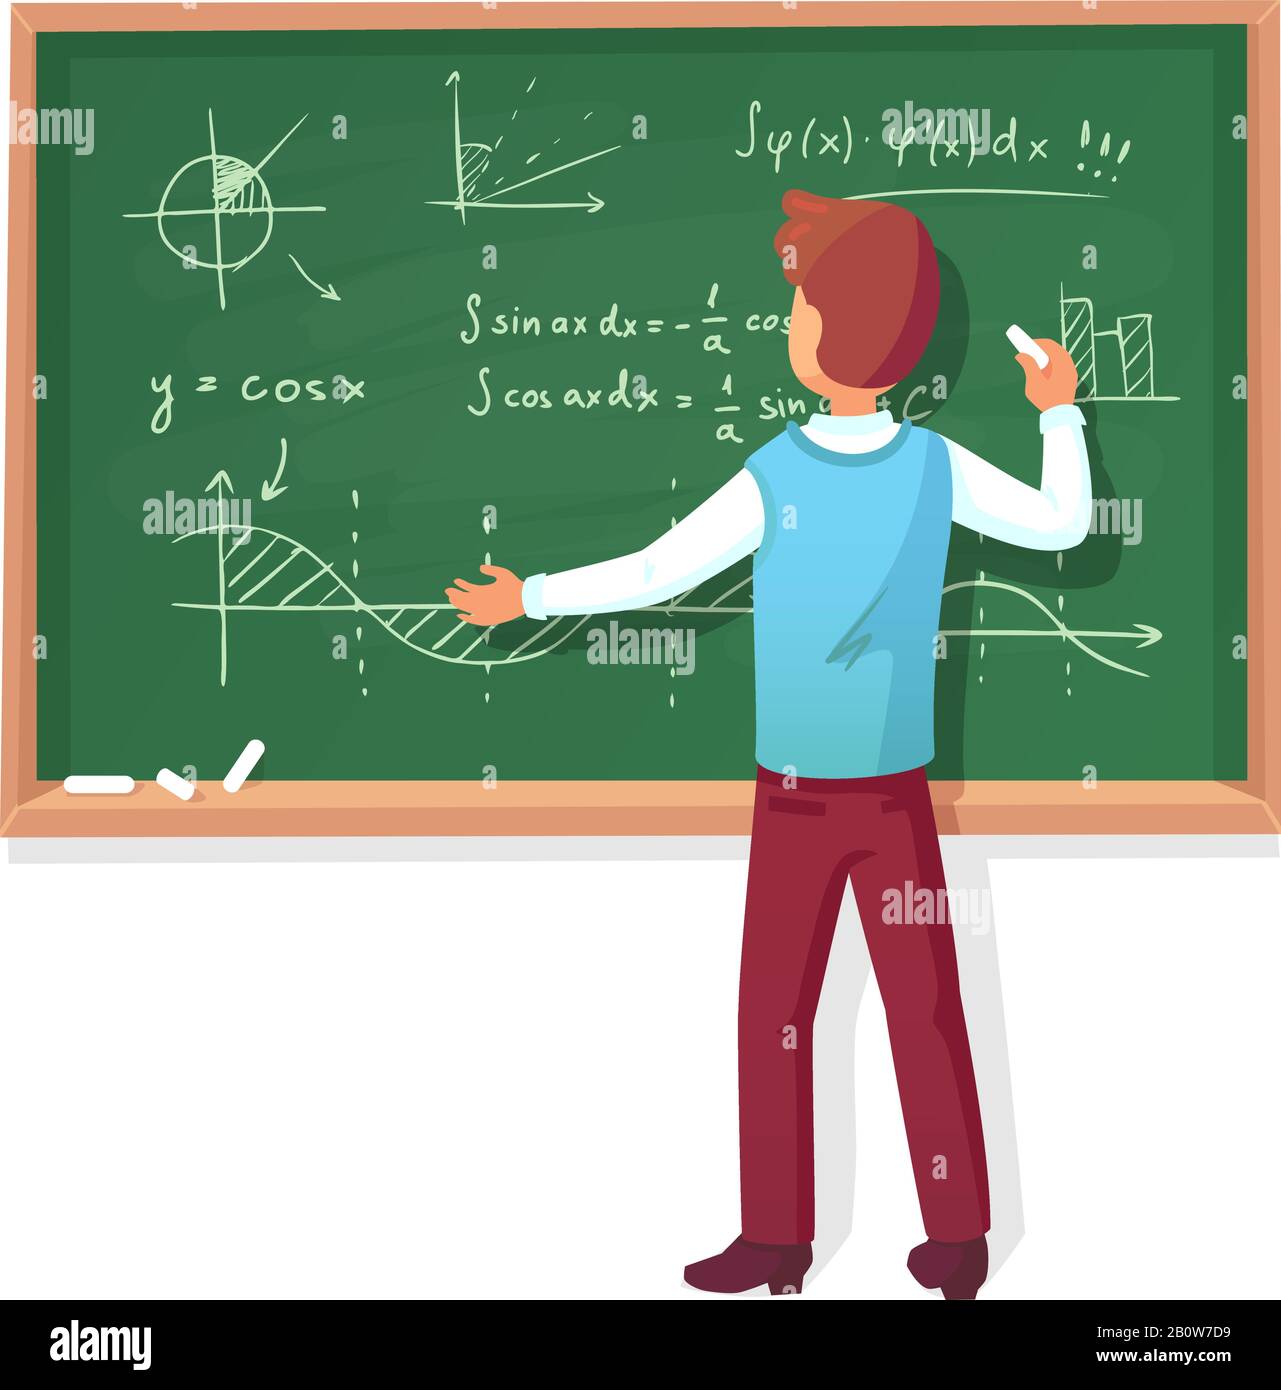 Lehrer schreiben auf Tafel. Schulprofessor unterrichtet Schüler und erklärt Diagramme Formeln Grafiken auf der Schwarzen Brett Vektor Illustration Stock Vektor